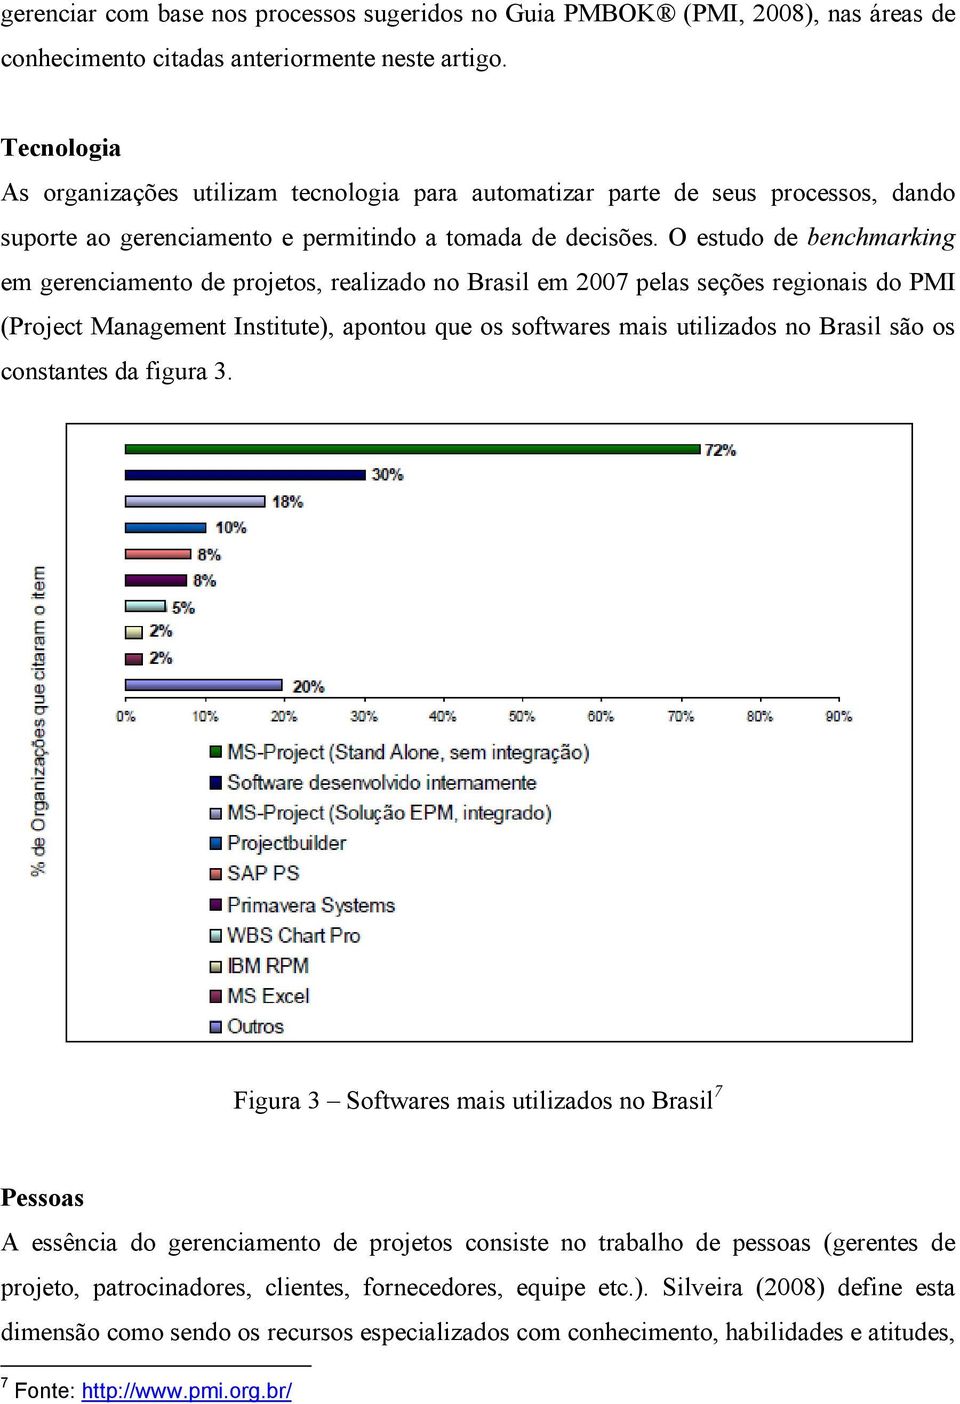 O estudo de benchmarking em gerenciamento de projetos, realizado no Brasil em 2007 pelas seções regionais do PMI (Project Management Institute), apontou que os softwares mais utilizados no Brasil são